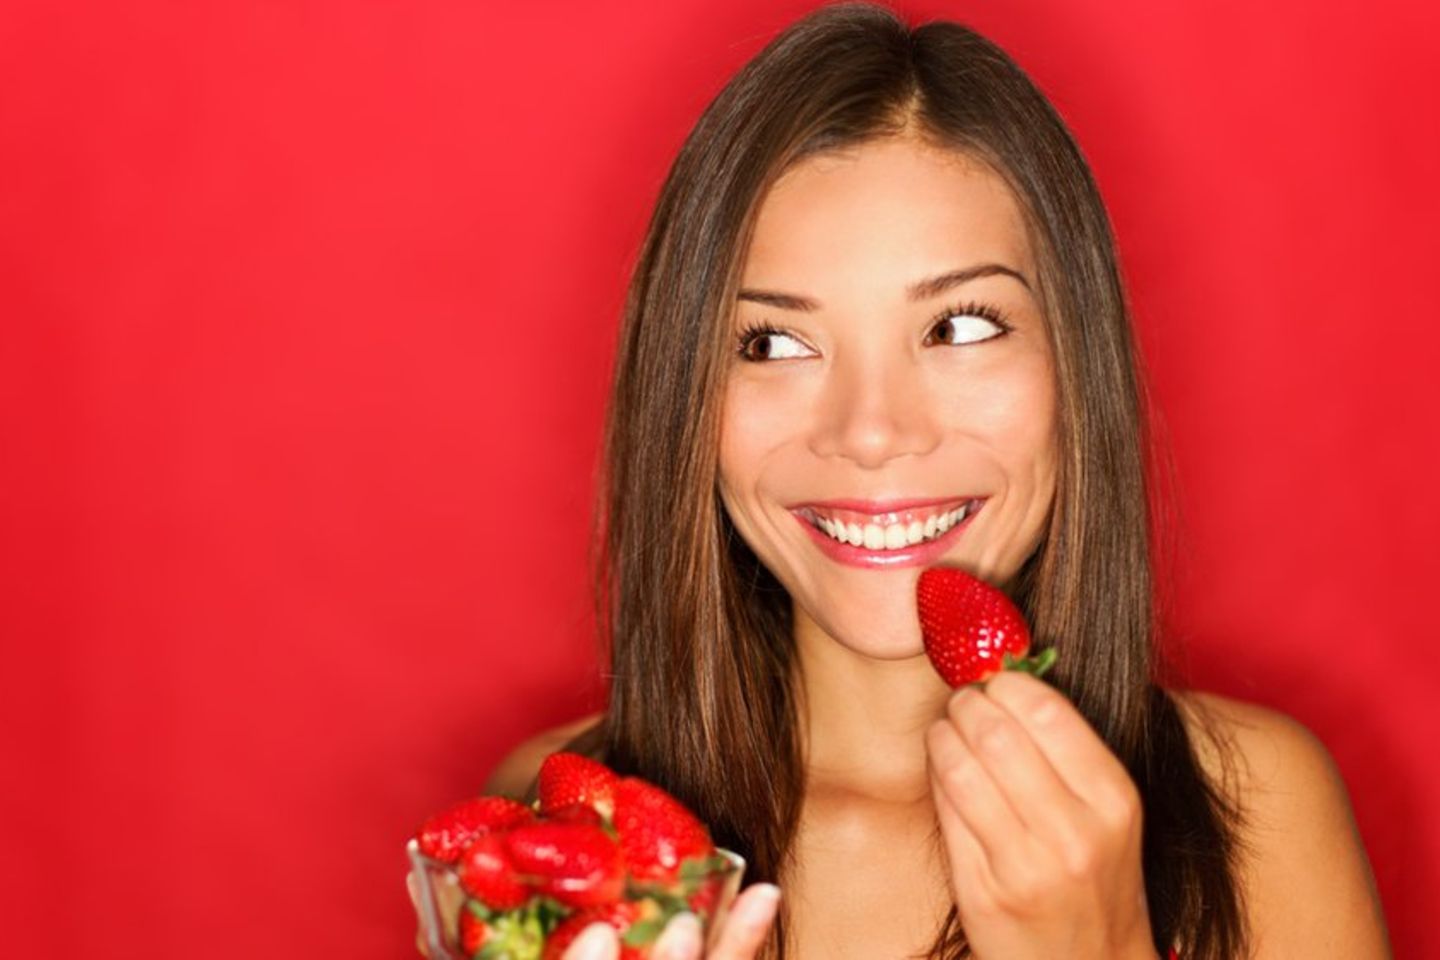 Erdbeersaison: So bleiben die Früchte möglichst lange frisch